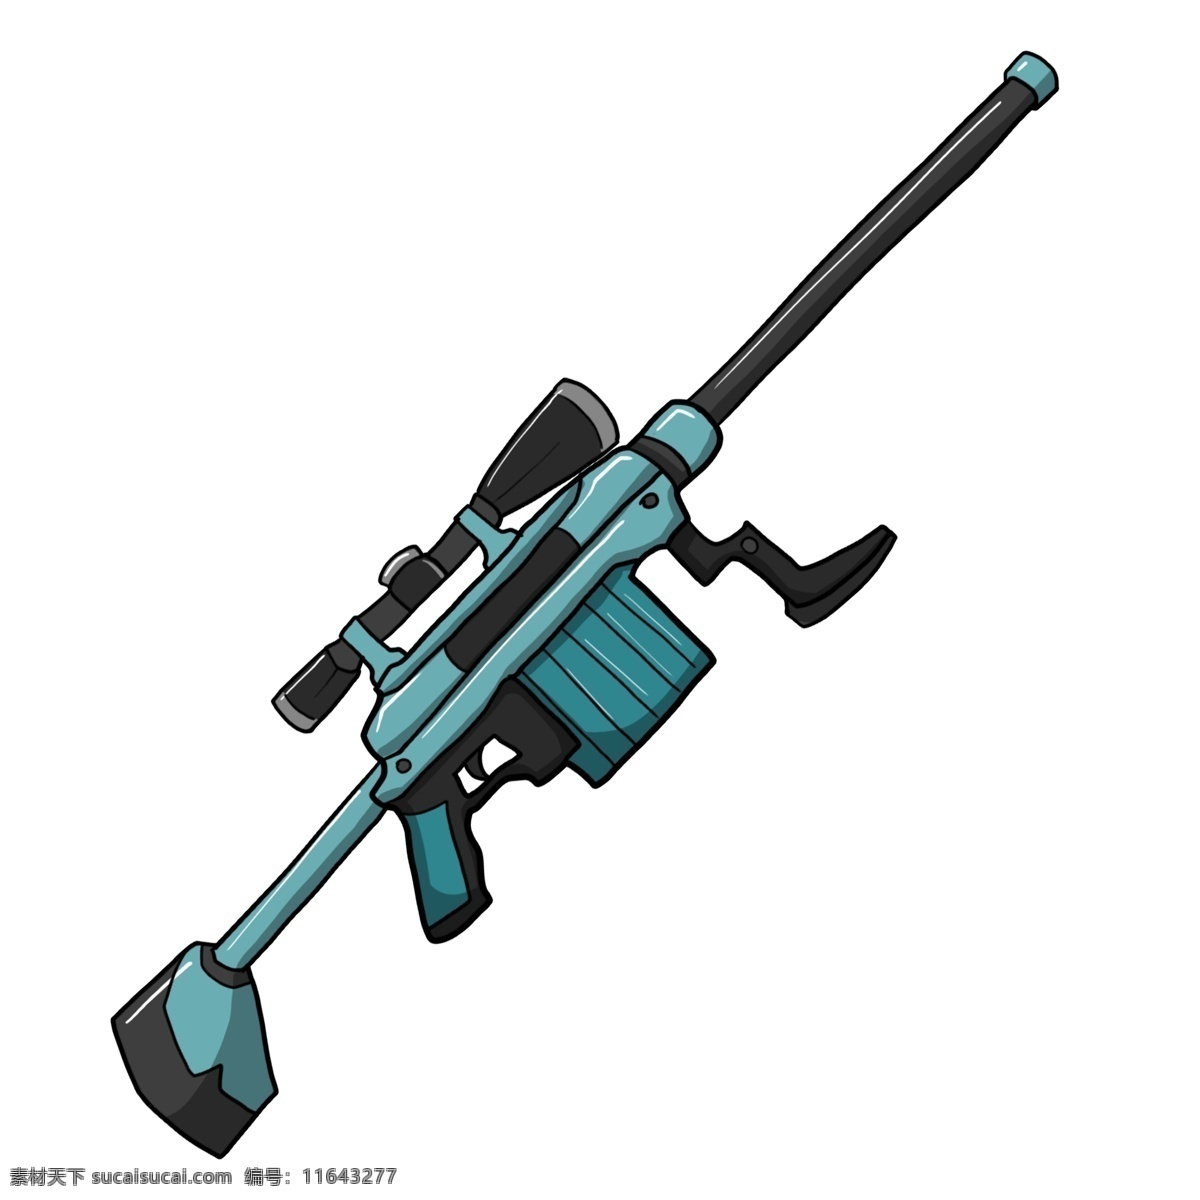 手绘 蓝色 狙击 枪 插画 创意 精致的狙击枪 现代化武器 枪托 枪坐 准星 卡簧 金属 子弹